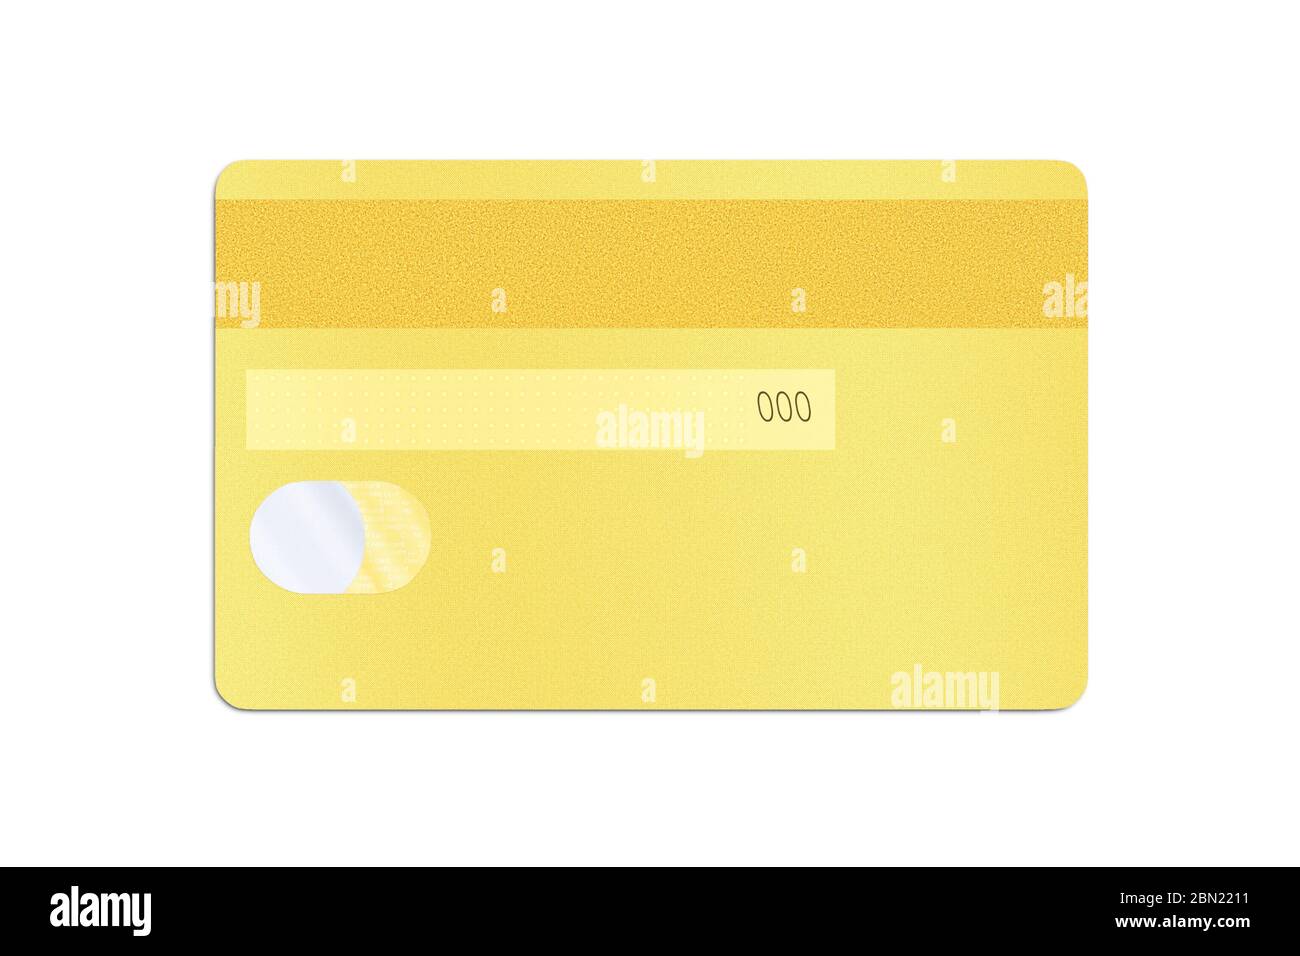 Rückseite einer goldenen Kreditkarte mit einem holografischen Aufkleber und  Sicherheitscode auf einem weißen Hintergrund isoliert. Designelement mit  Clipping-Pat gespeichert Stockfotografie - Alamy